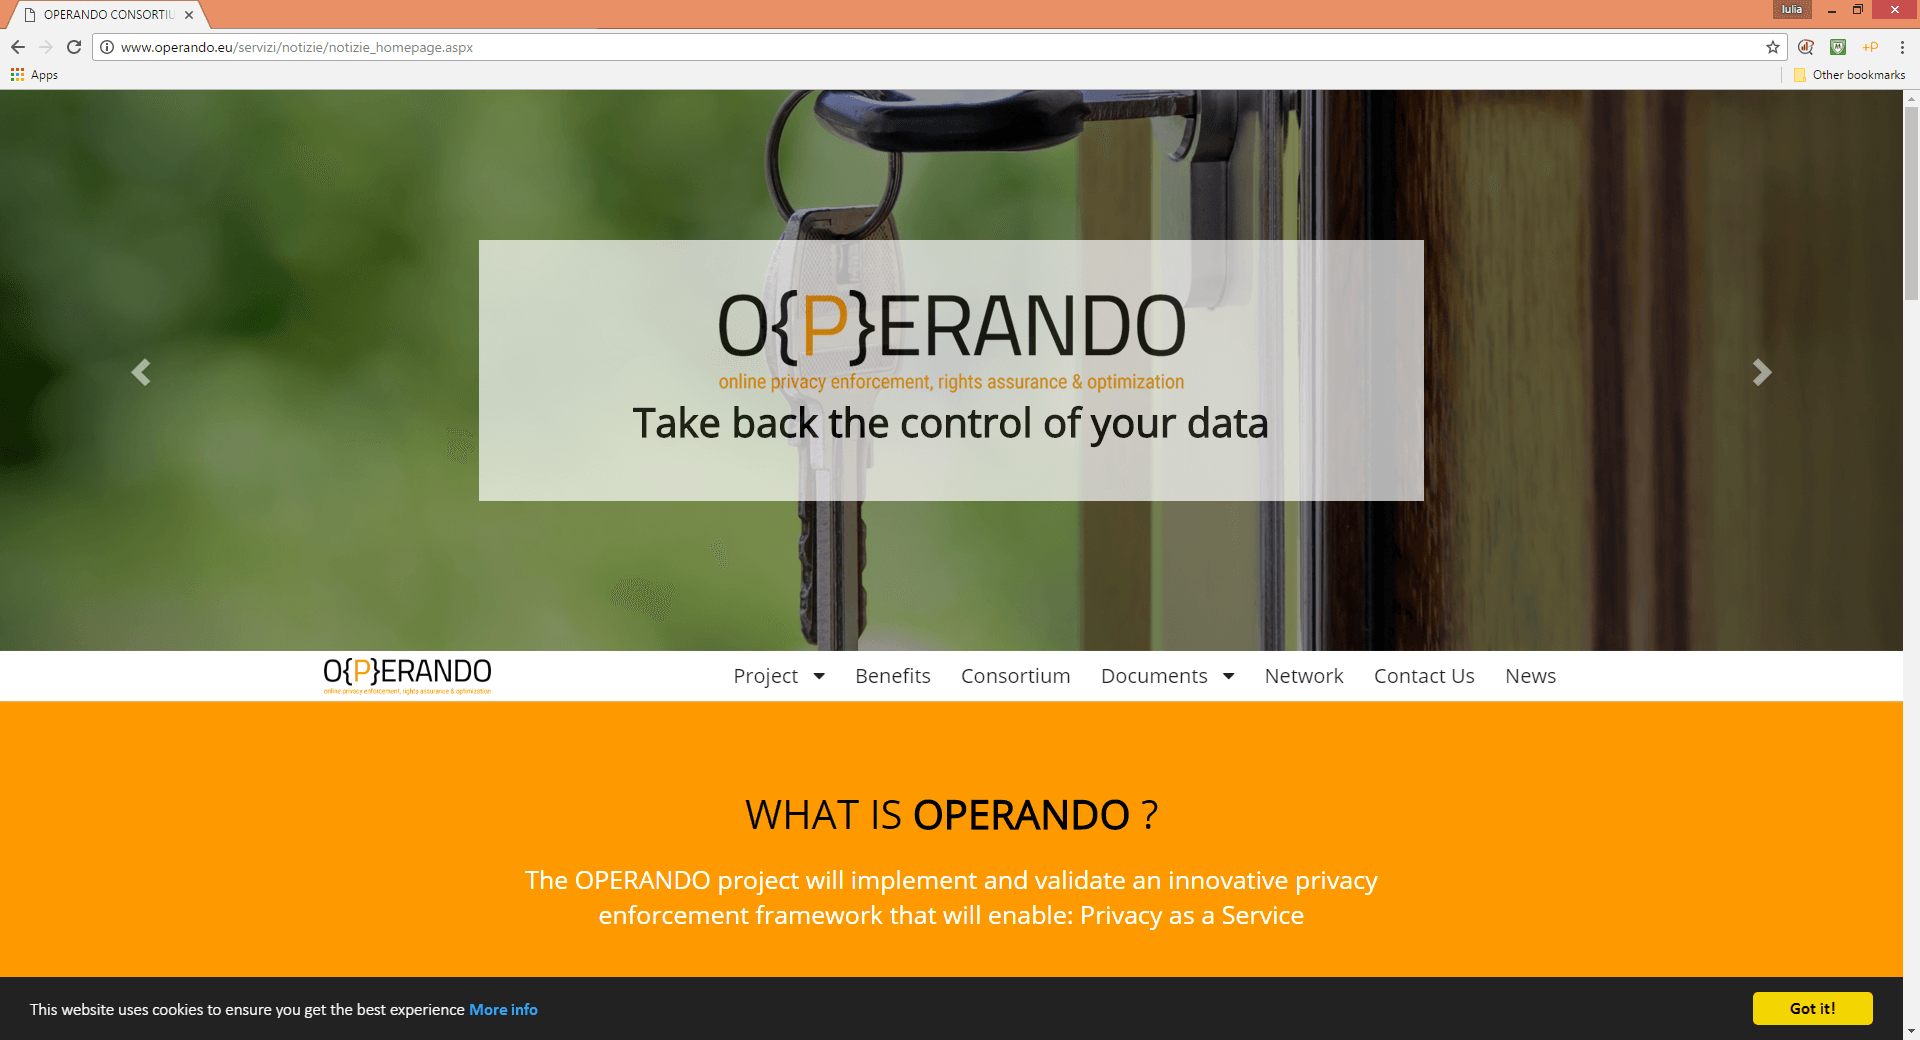 OPERANDO web page